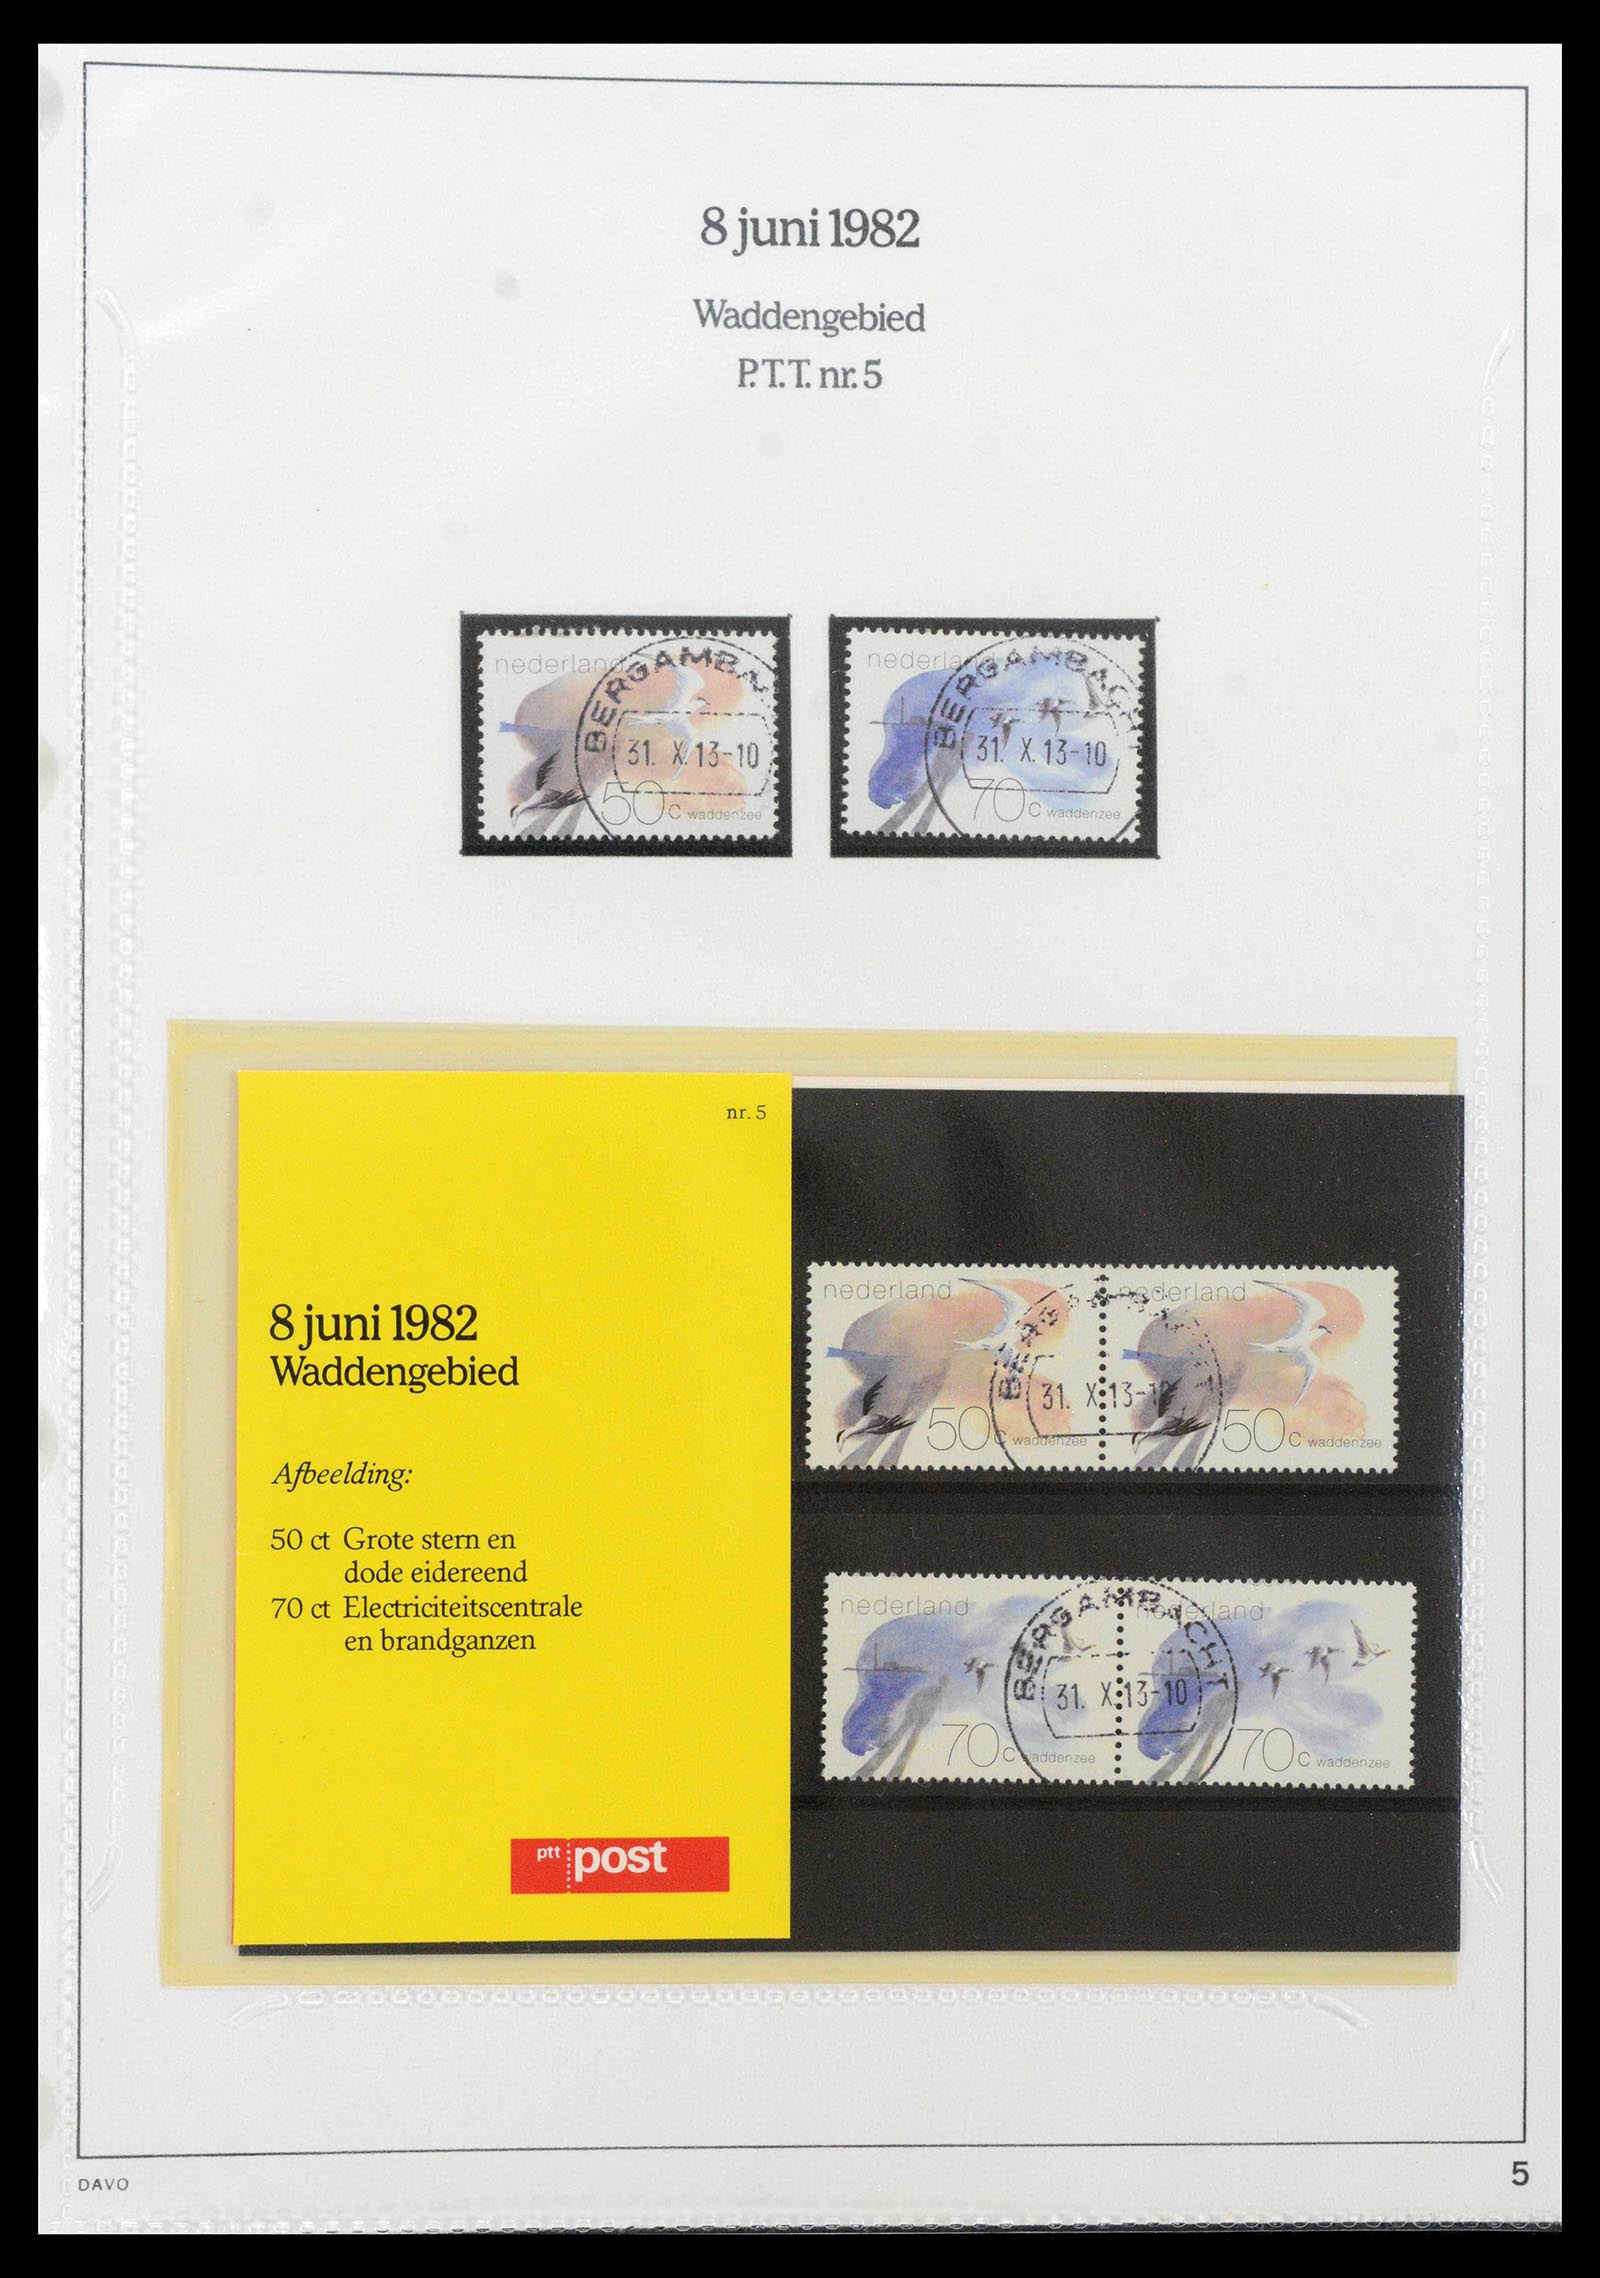 39121 0005 - Stamp collection 39121 Netherlands presentationpacks 1982-2001.